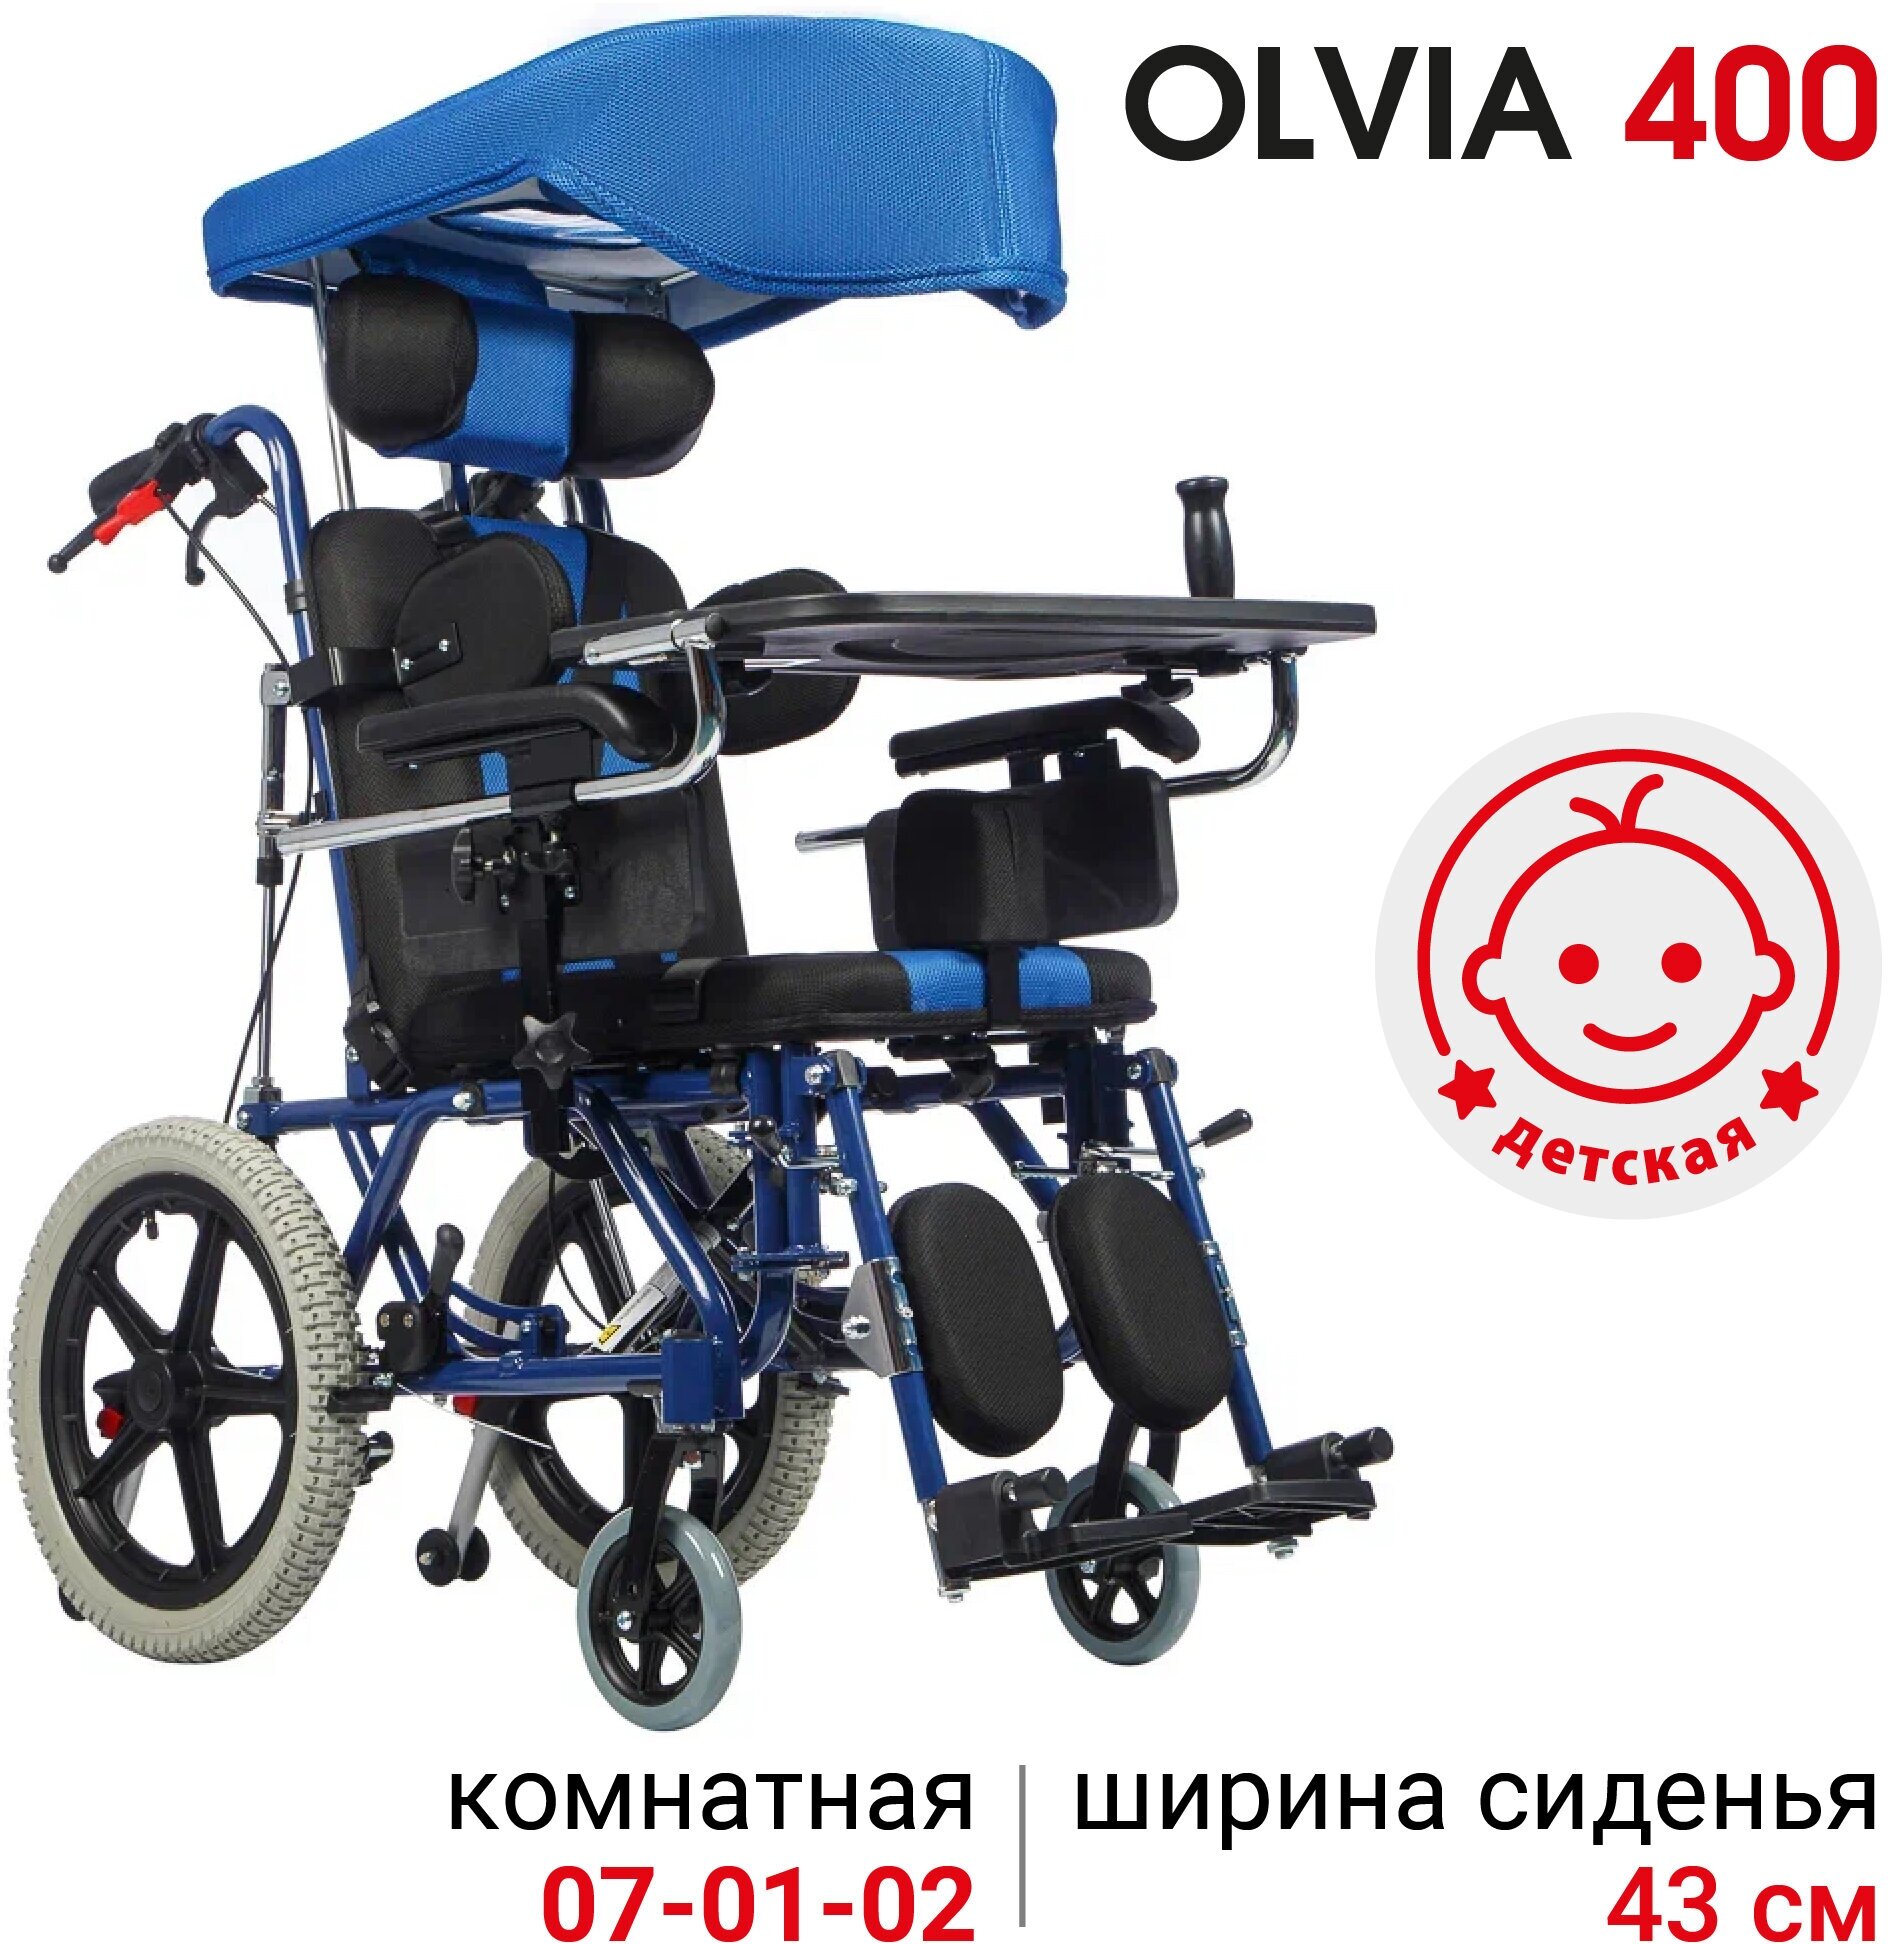 Кресло-коляска детское комнатное Ortonica Olvia 400 43UU детей с ДЦП с капюшоном и столиком ширина сиденья 43 см литые колеса